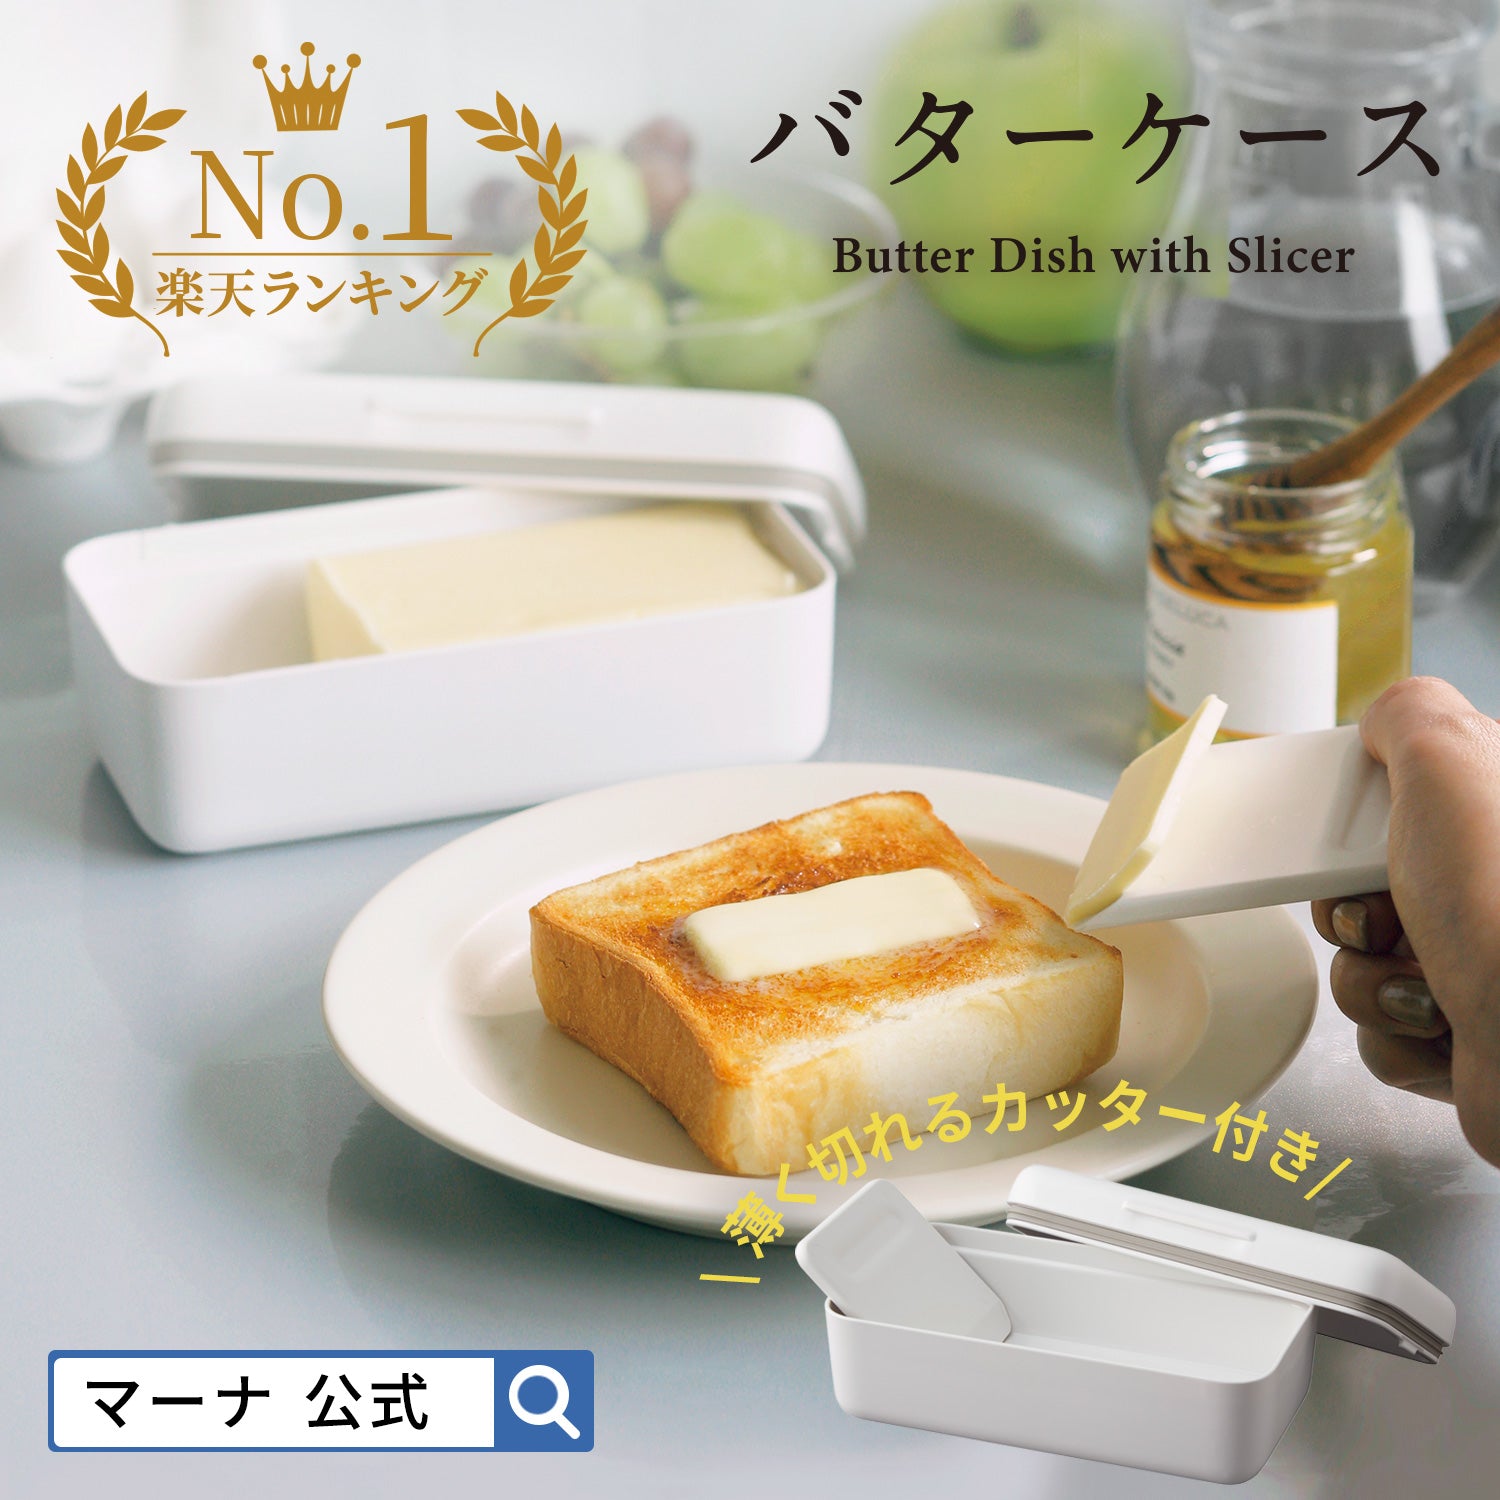 【預購】日本進口 Marna 牛油切片密封收納盒 (適用於200克) - Cnjpkitchen ❤️ 🇯🇵日本廚具 家居生活雜貨店